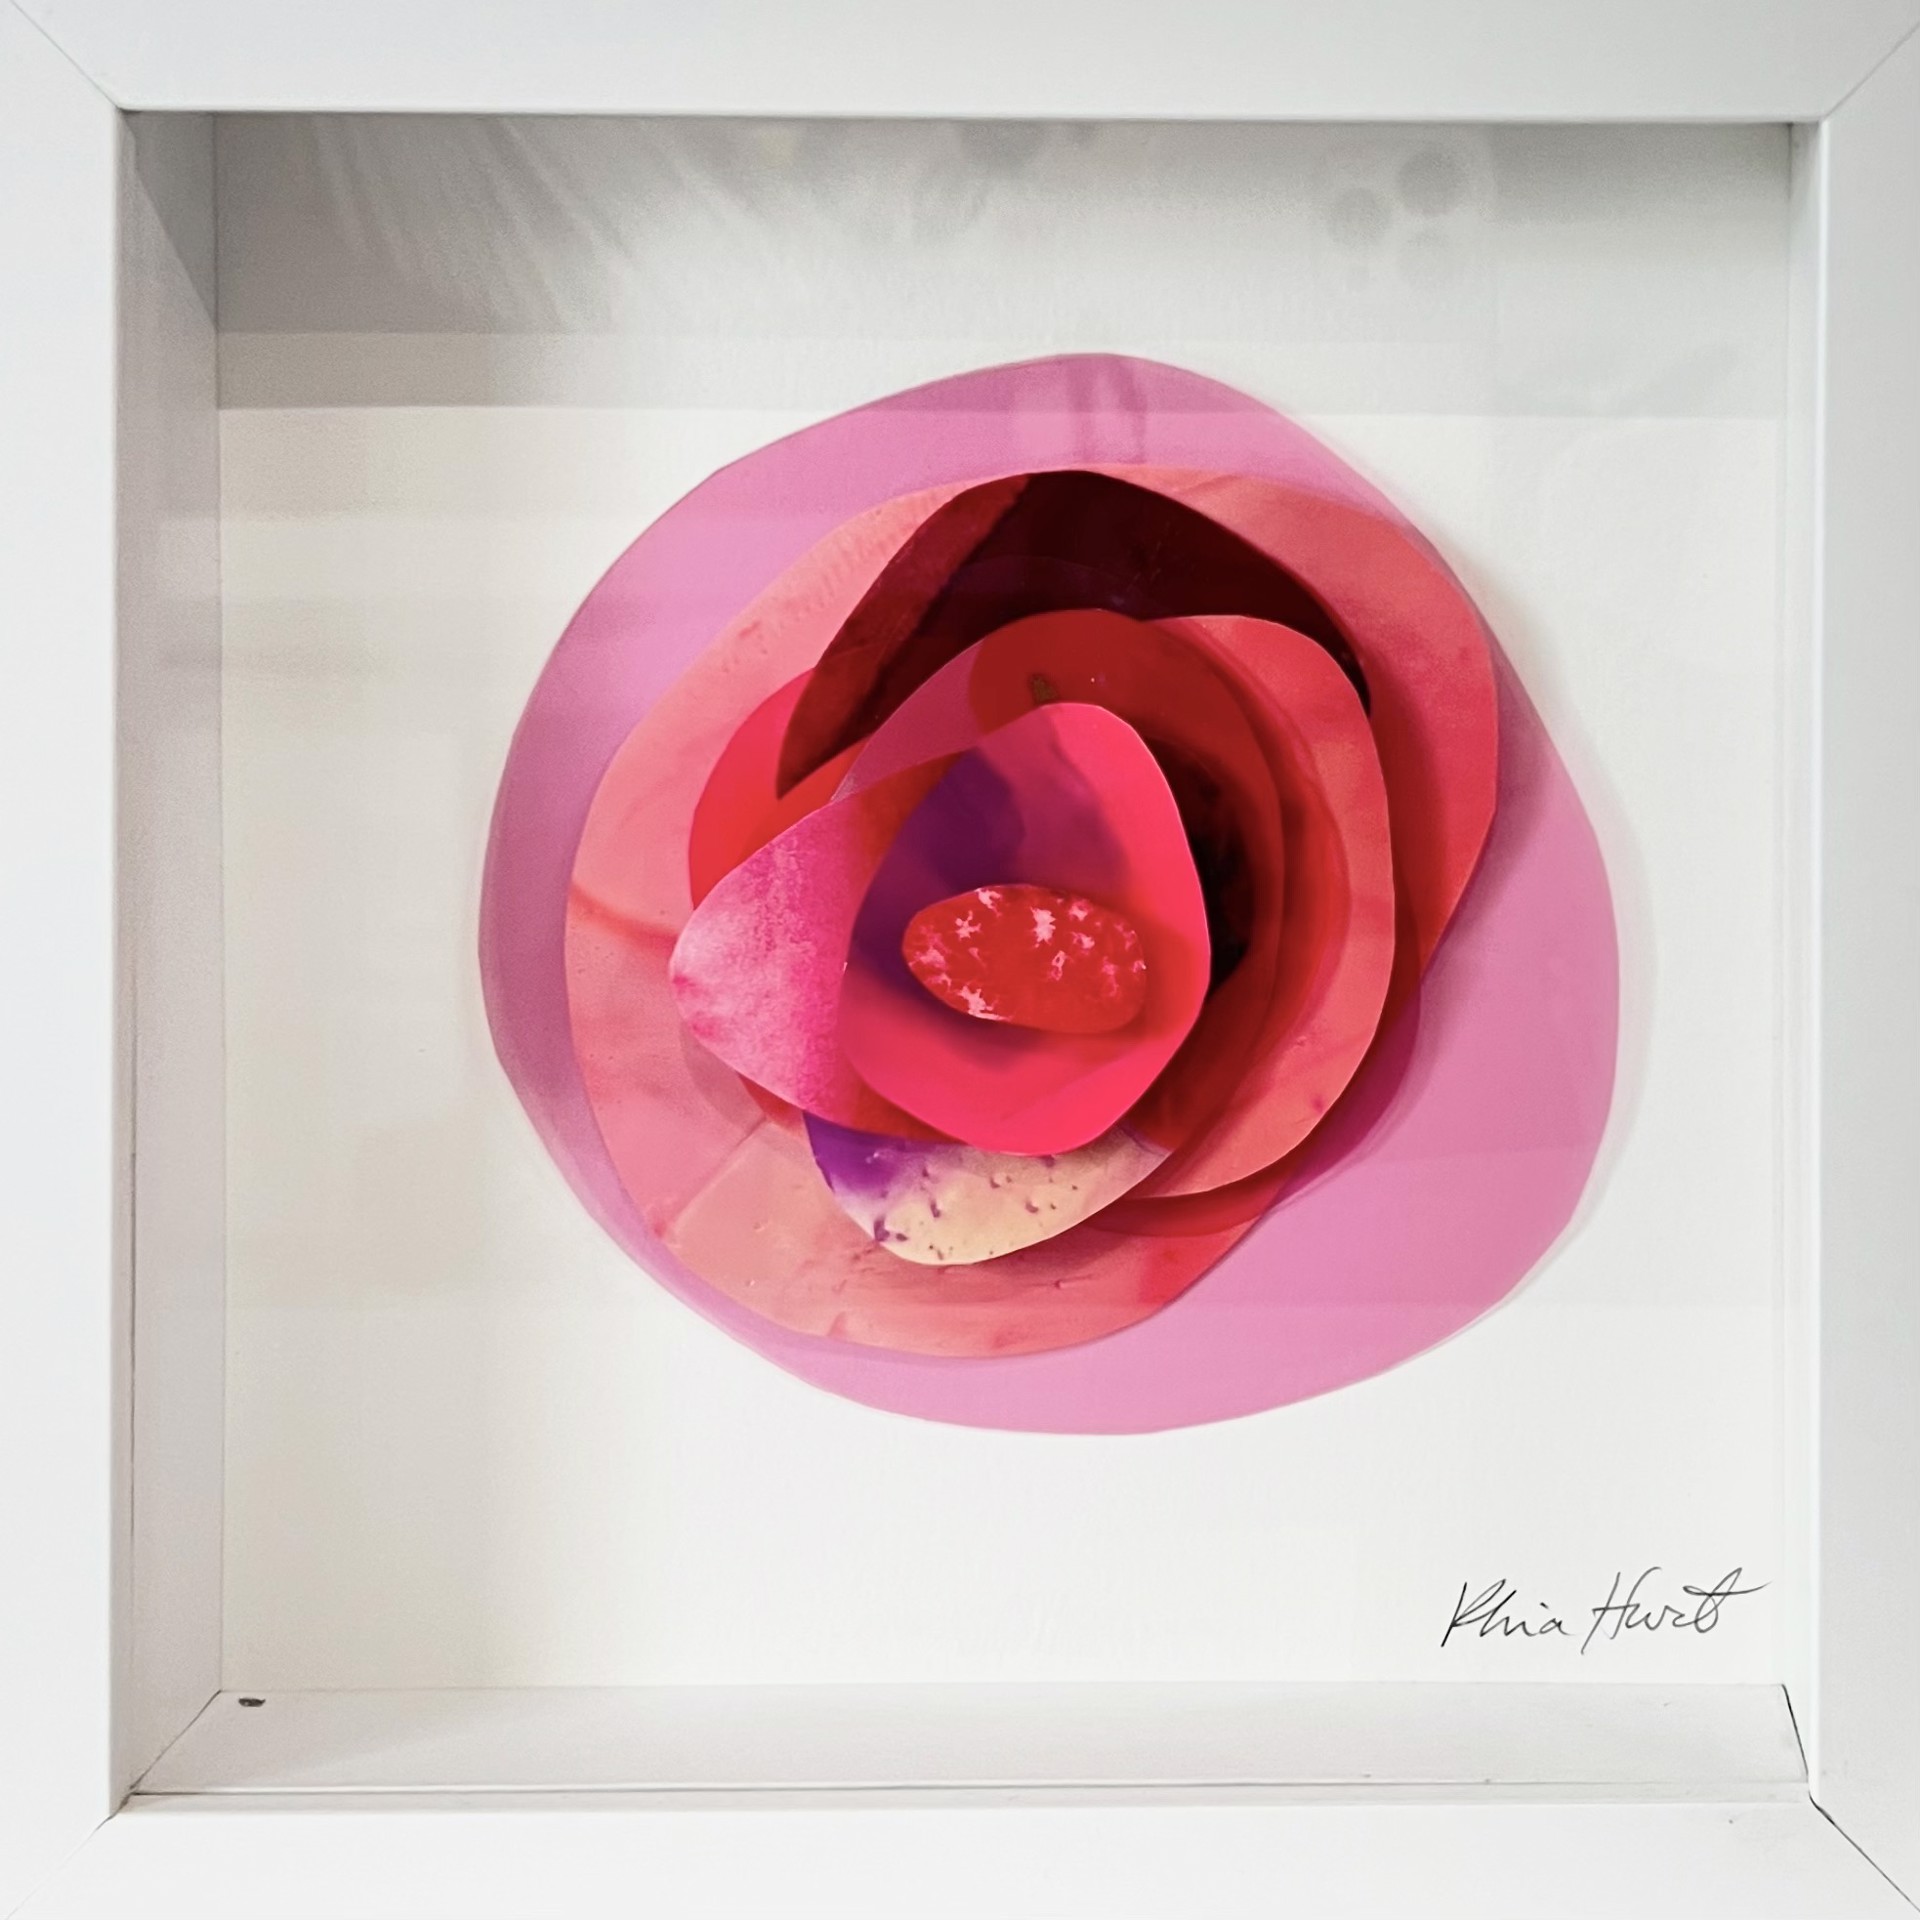 Small Framed Wall Flower by Rhia Hurt